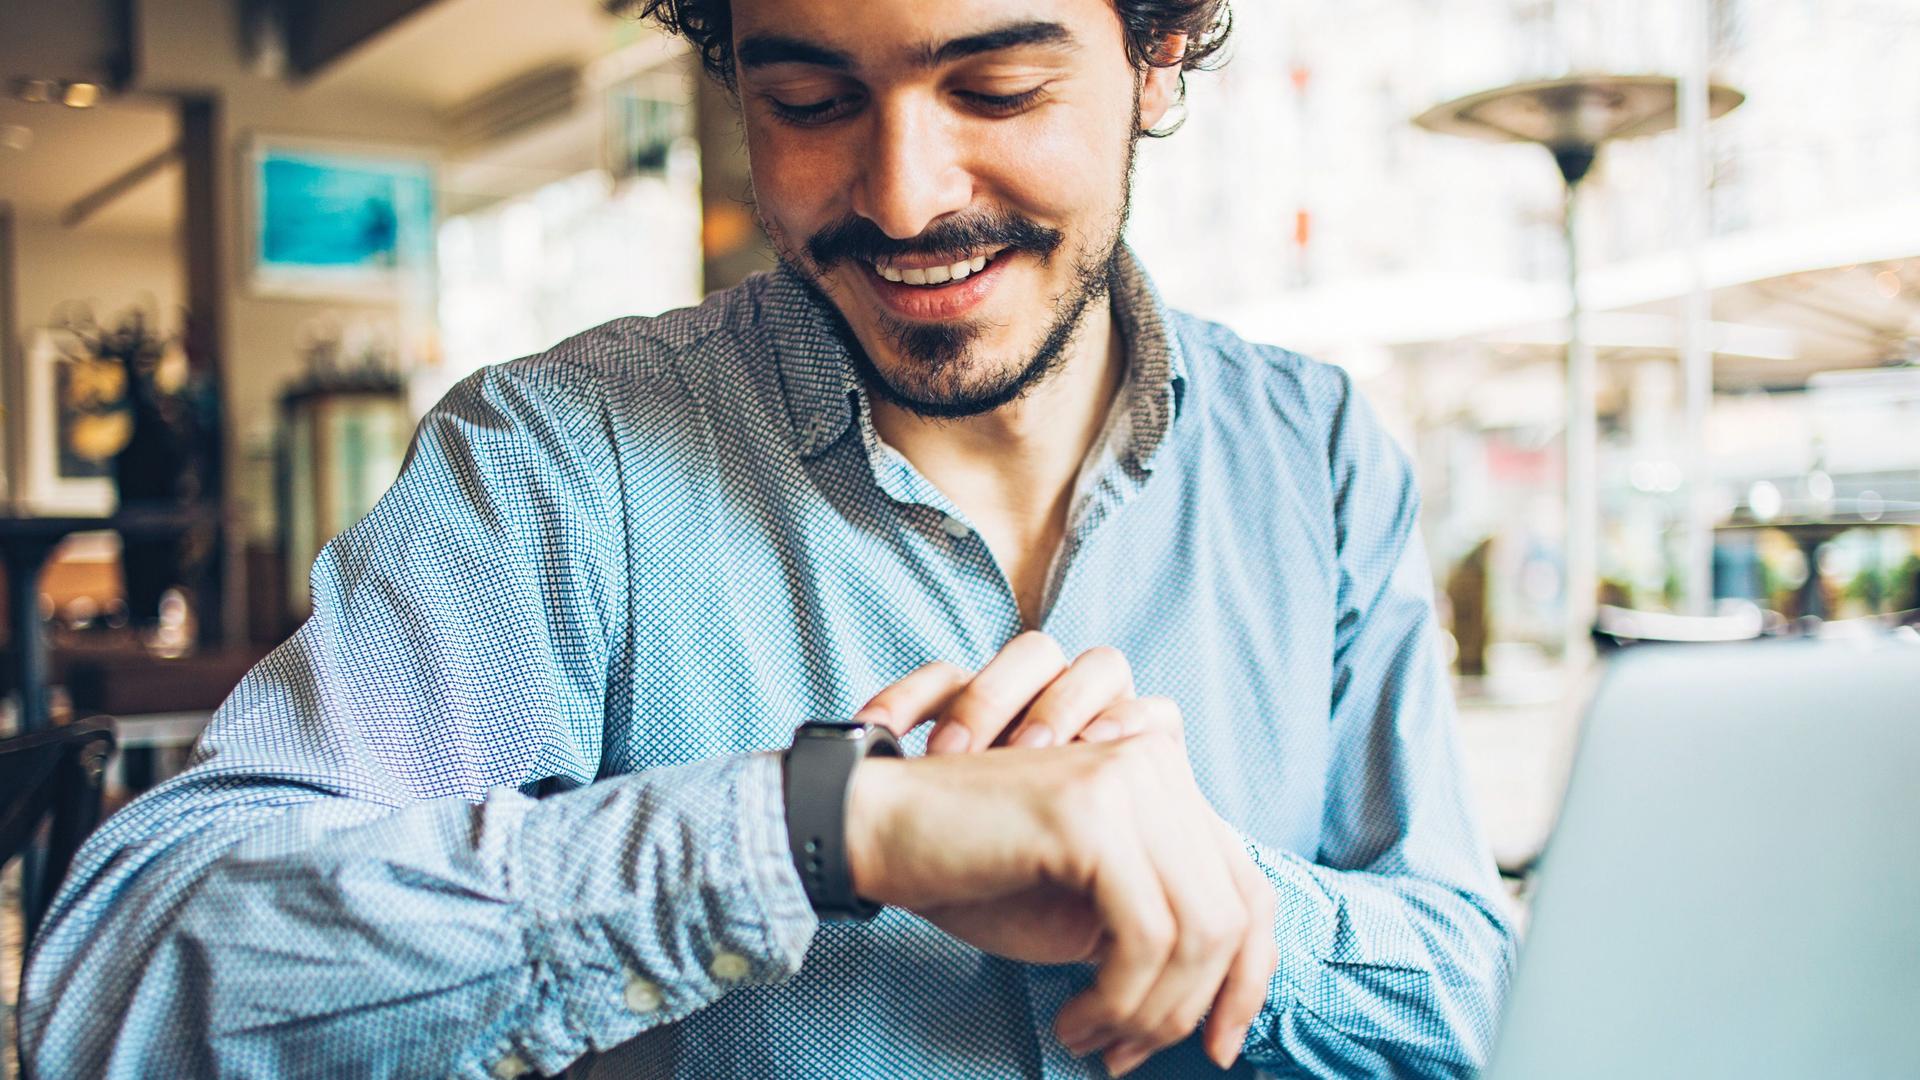 Portrait eines jungen Mannes, der in einem Café auf seine Smartwatch blickt.